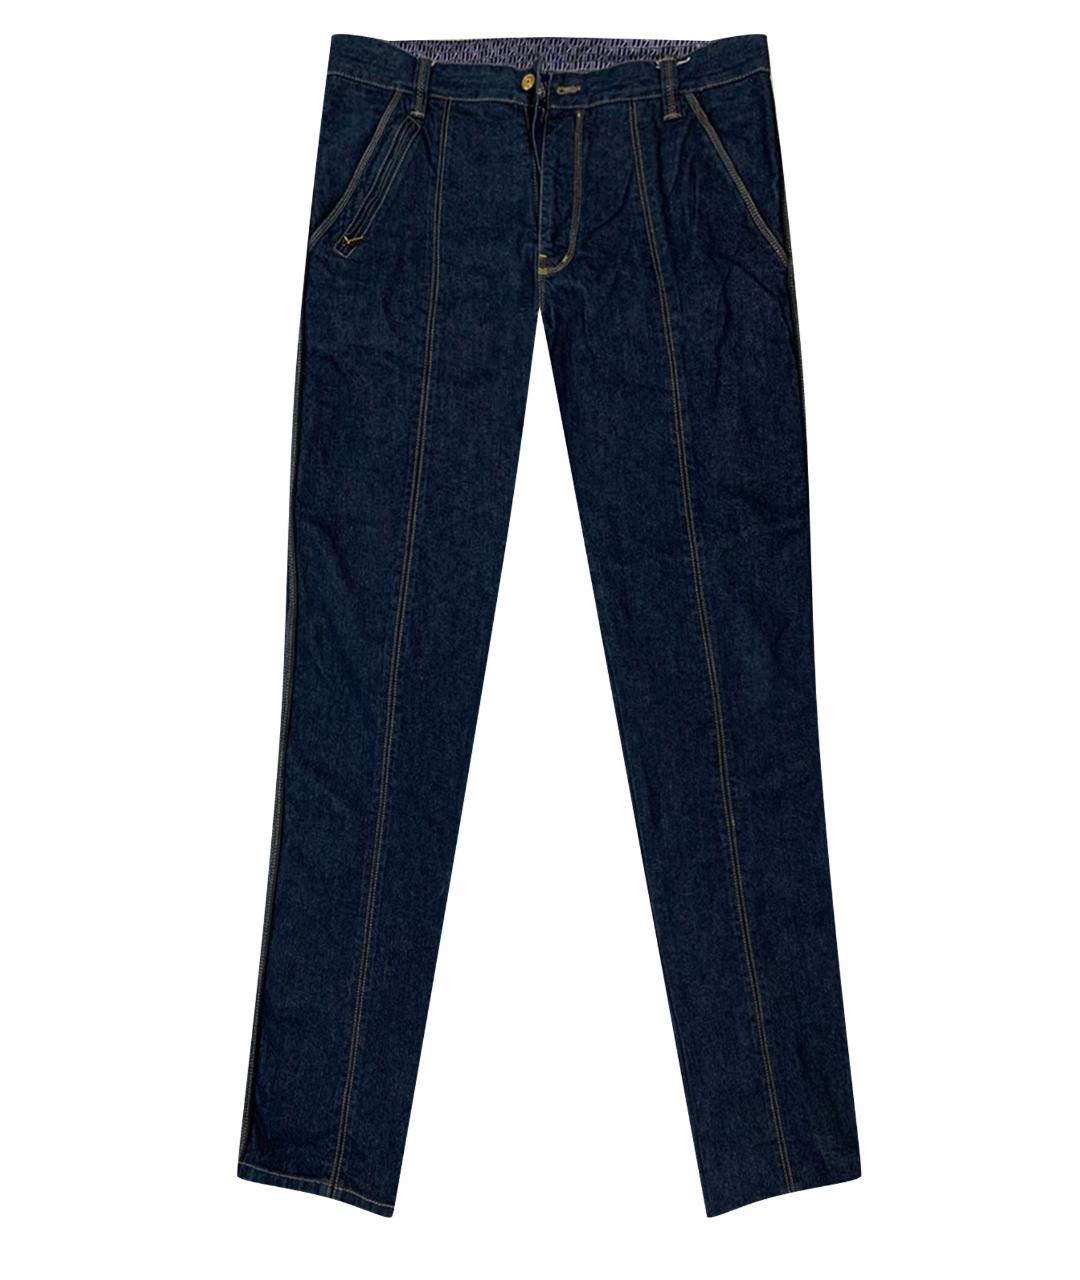 ZILLI Темно-синие хлопковые джинсы скинни, фото 1